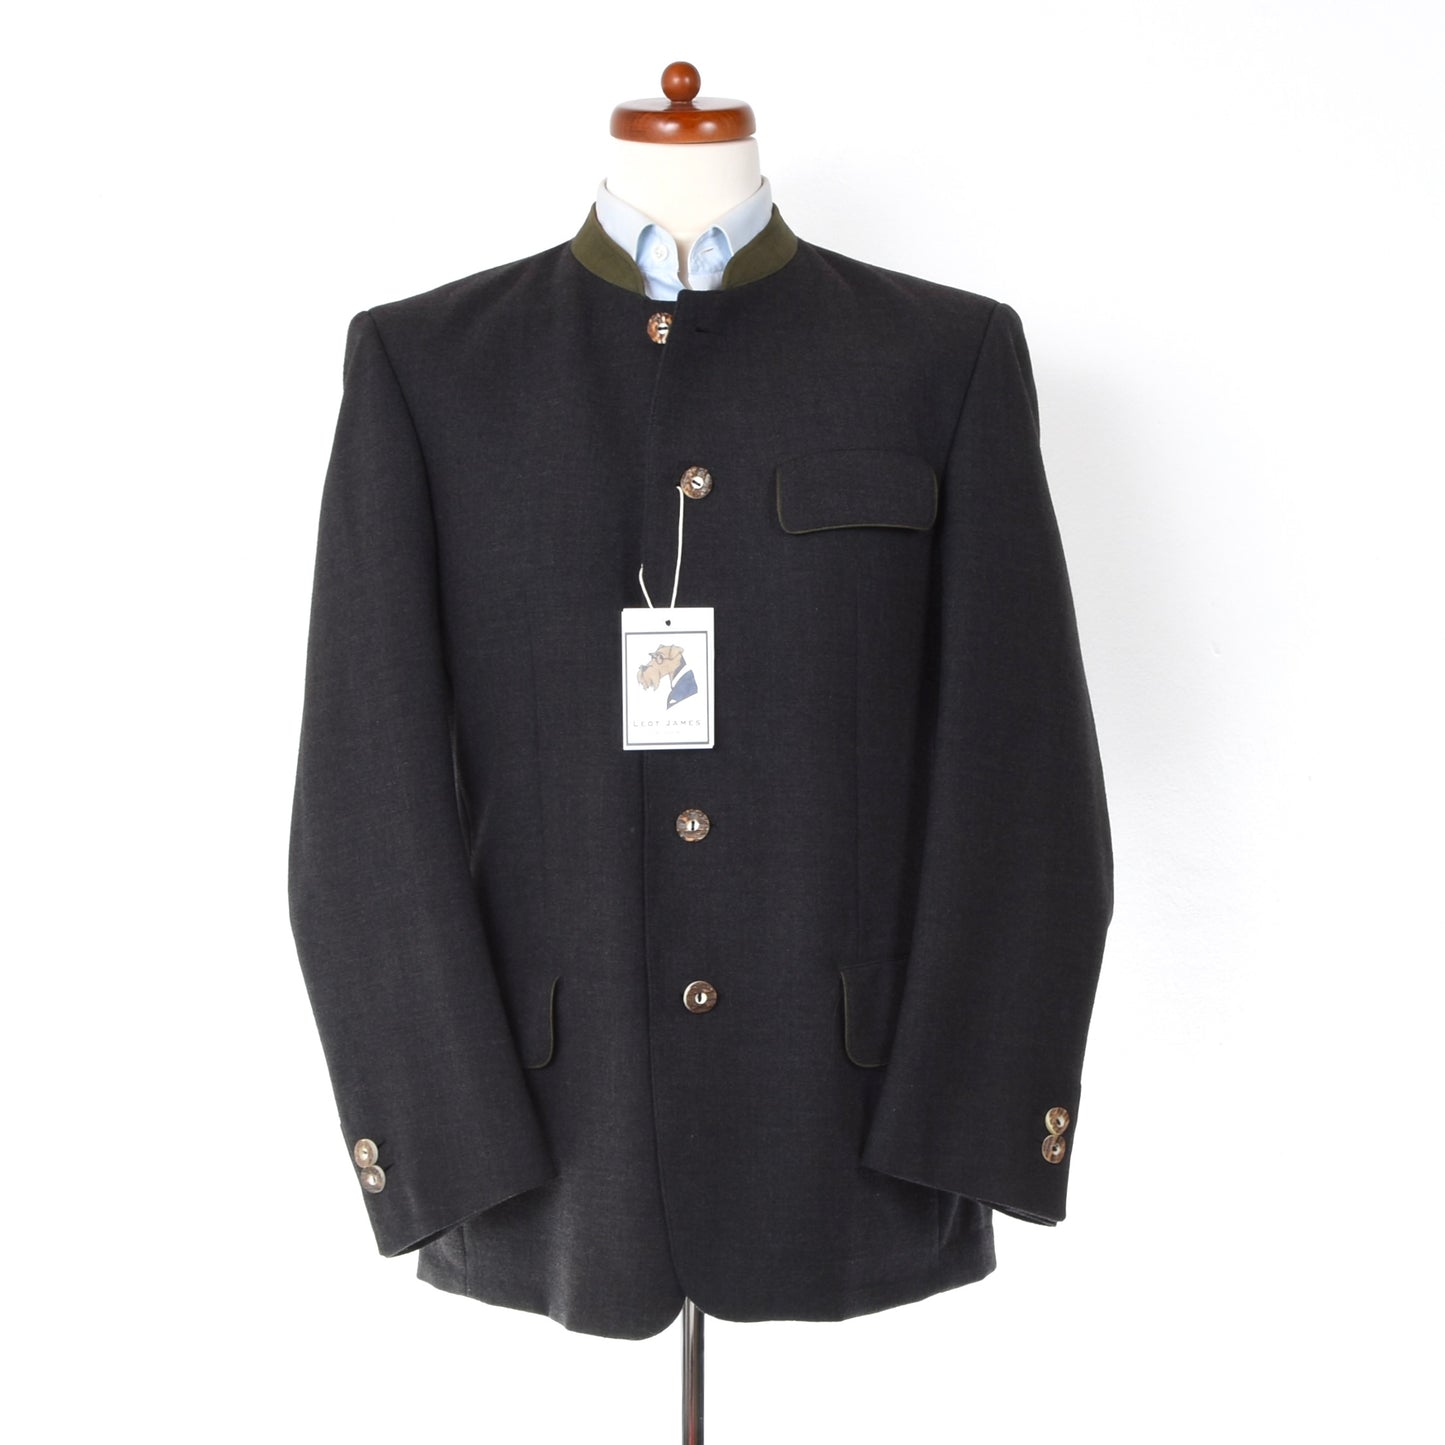 Gössl Wool Janker/Jacket Size 46 - Grey